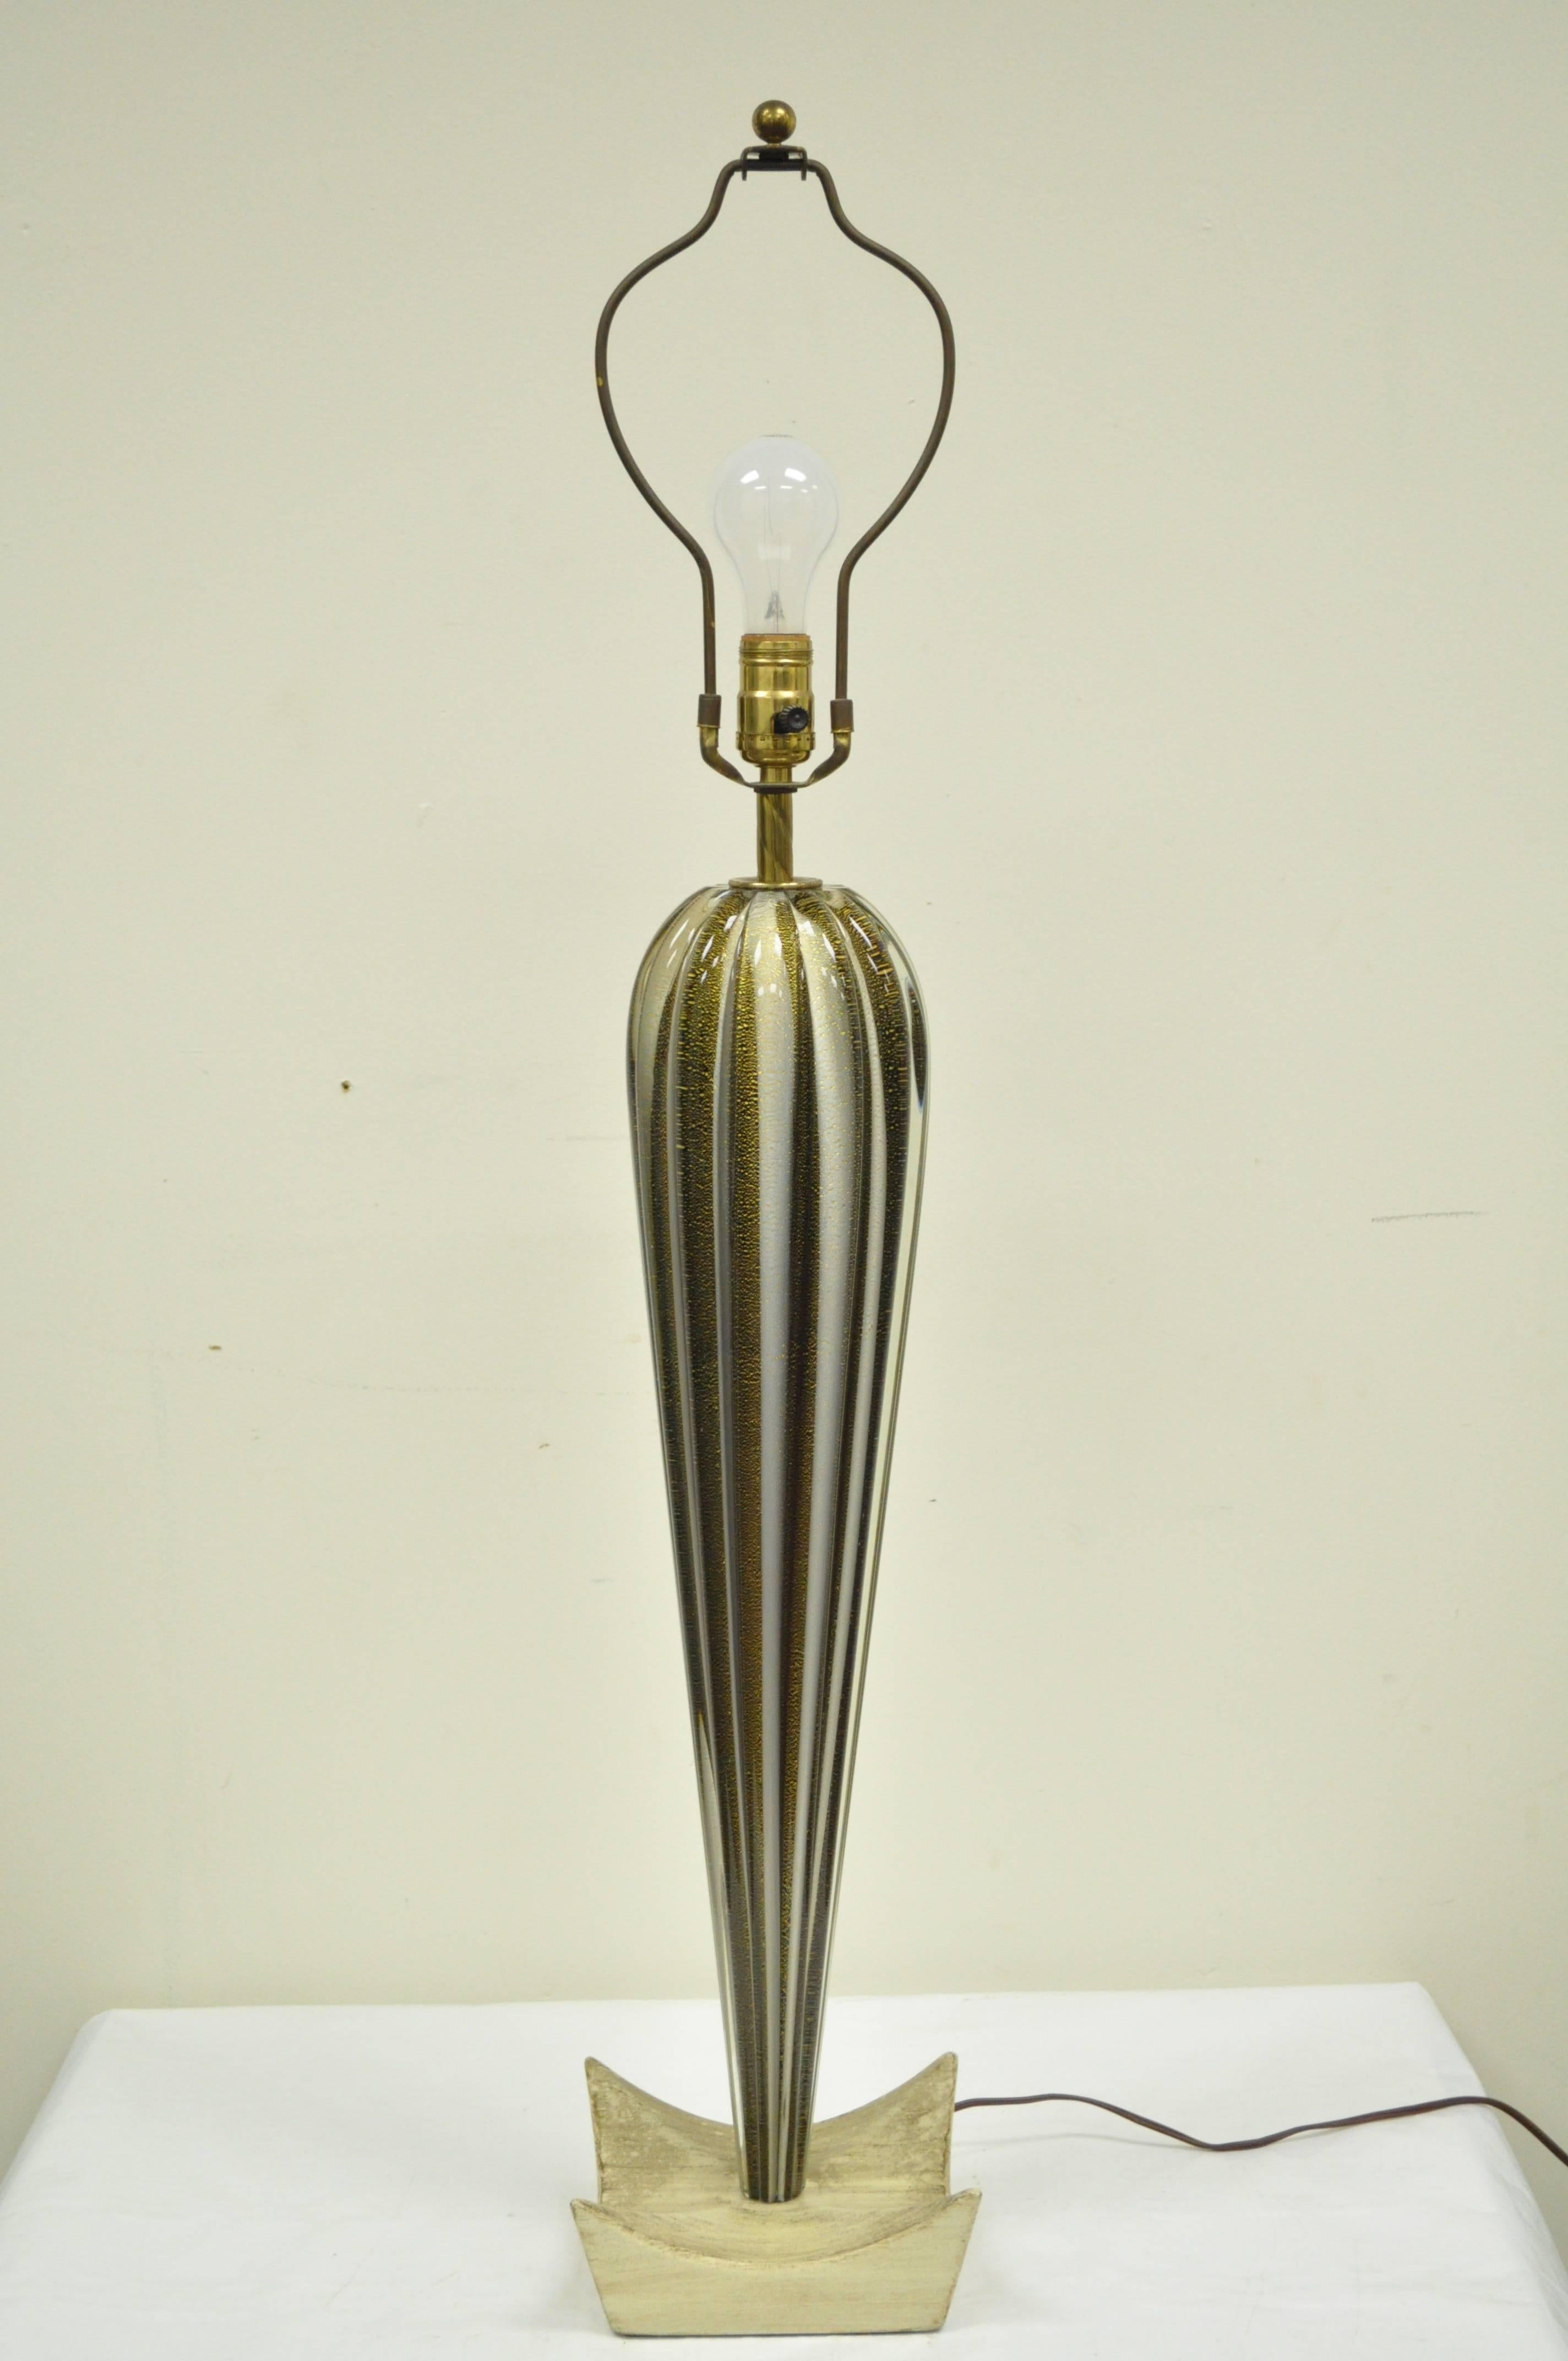 Wunderschöne Murano-Tischlampe, die Barovier e Toso zugeschrieben wird. Die Leuchte besteht aus einer formschönen Tropfenform aus mundgeblasenem Glas mit integrierten Goldflecken und einem skulpturalen und lackierten Holzsockel. Lampenschirm nicht